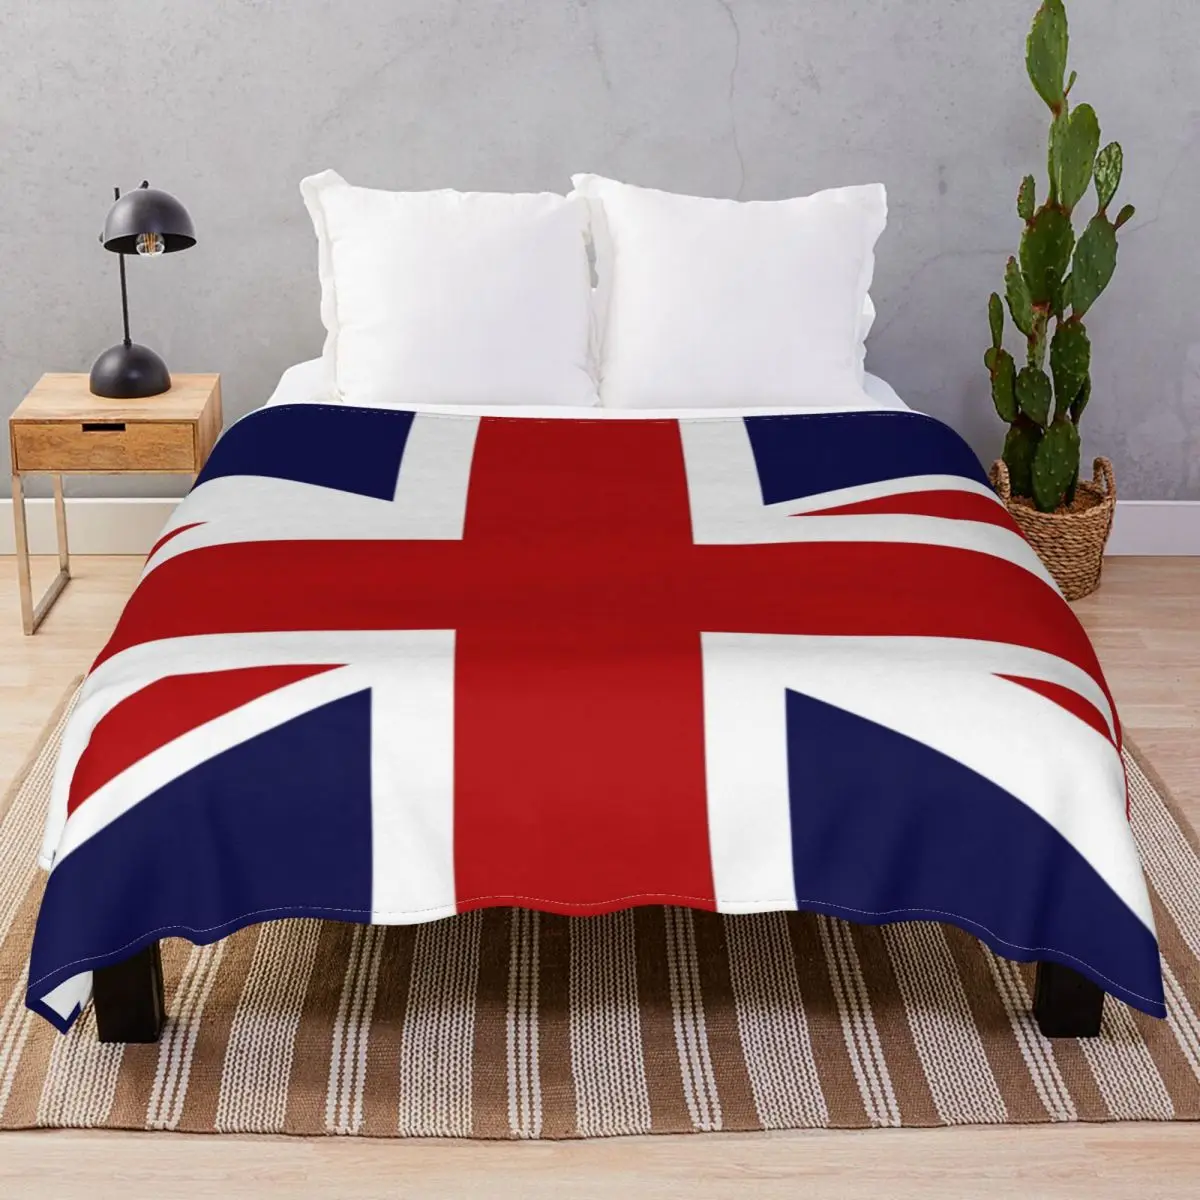 

Одеяло Унисекс с флагом Великобритании, флисовое украшение, легкий плед, для кровати, дома, дивана, путешествий, офиса